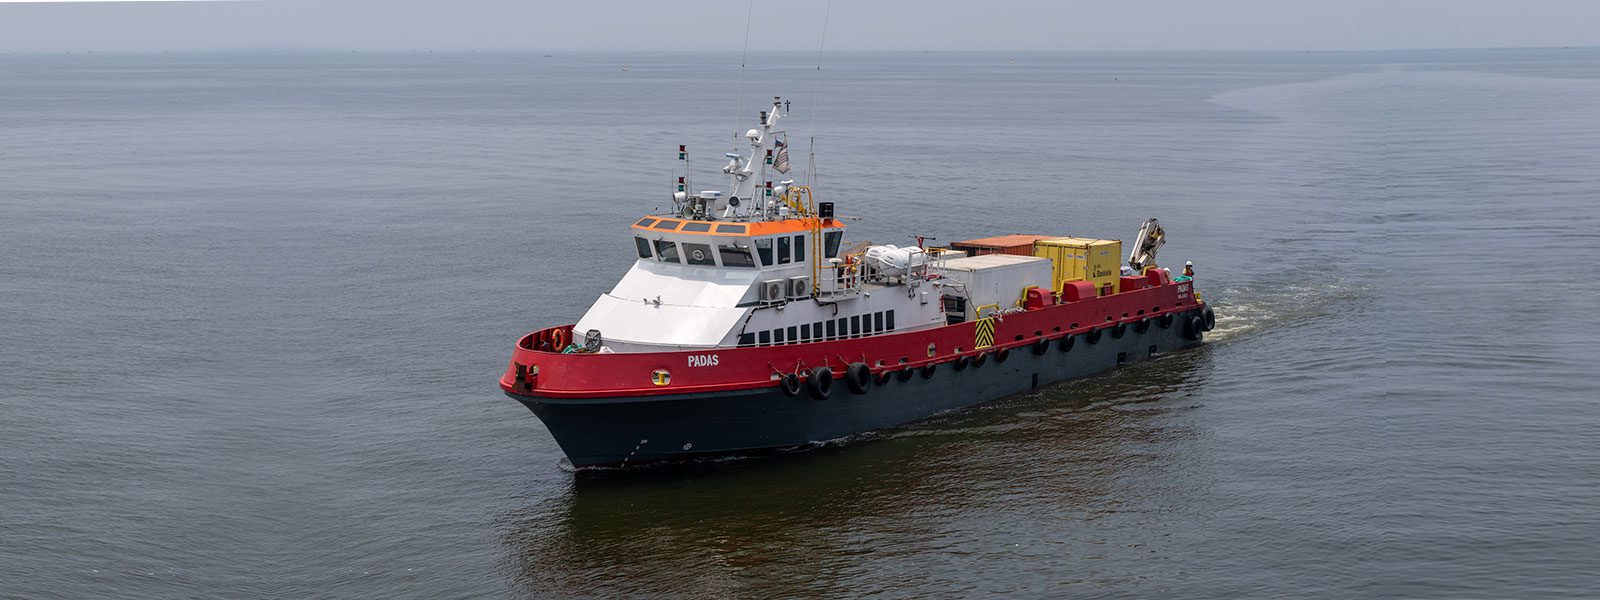 Bridgemans adds 40-metre vessel to growing Marine Services fleet